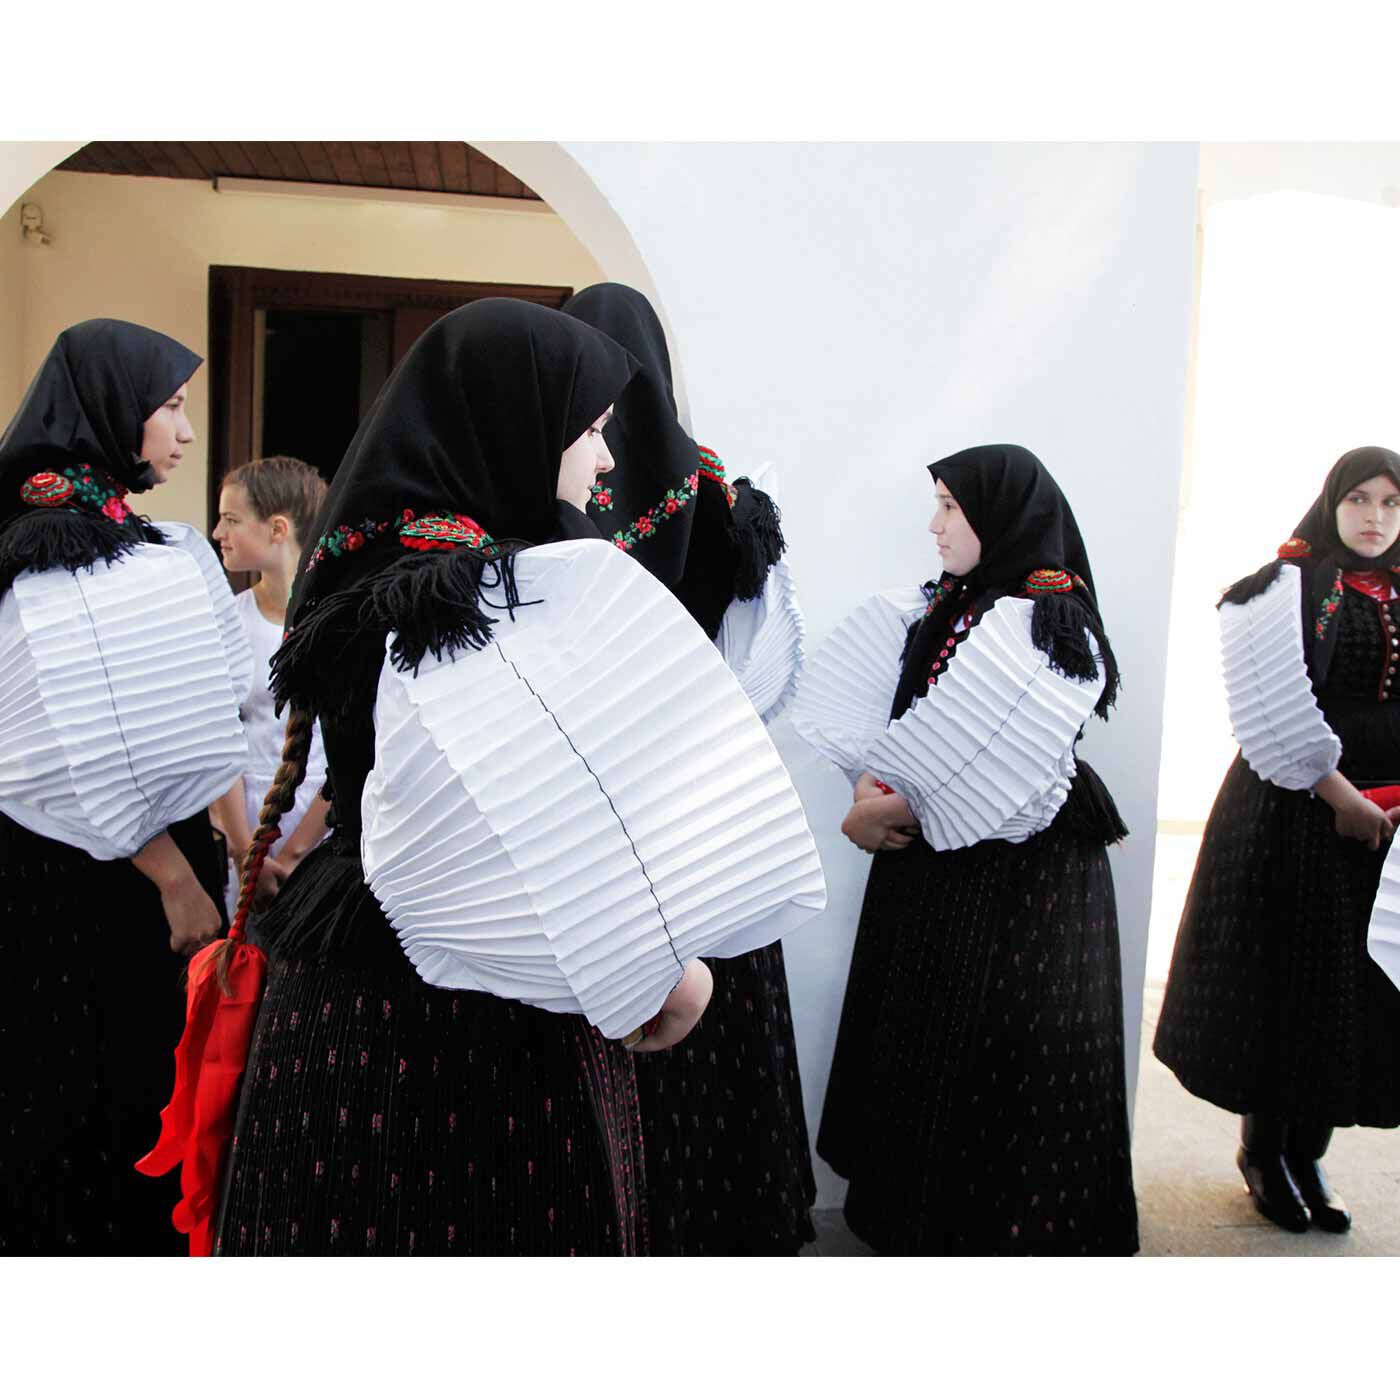 クチュリエ|トランシルヴァニアからの贈りもの シク村のアウトライン刺しゅうのタペストリーの会|美しい民族衣装を着たシク村の女性たち。アコーディオンのように大きく広がった袖が特徴的。